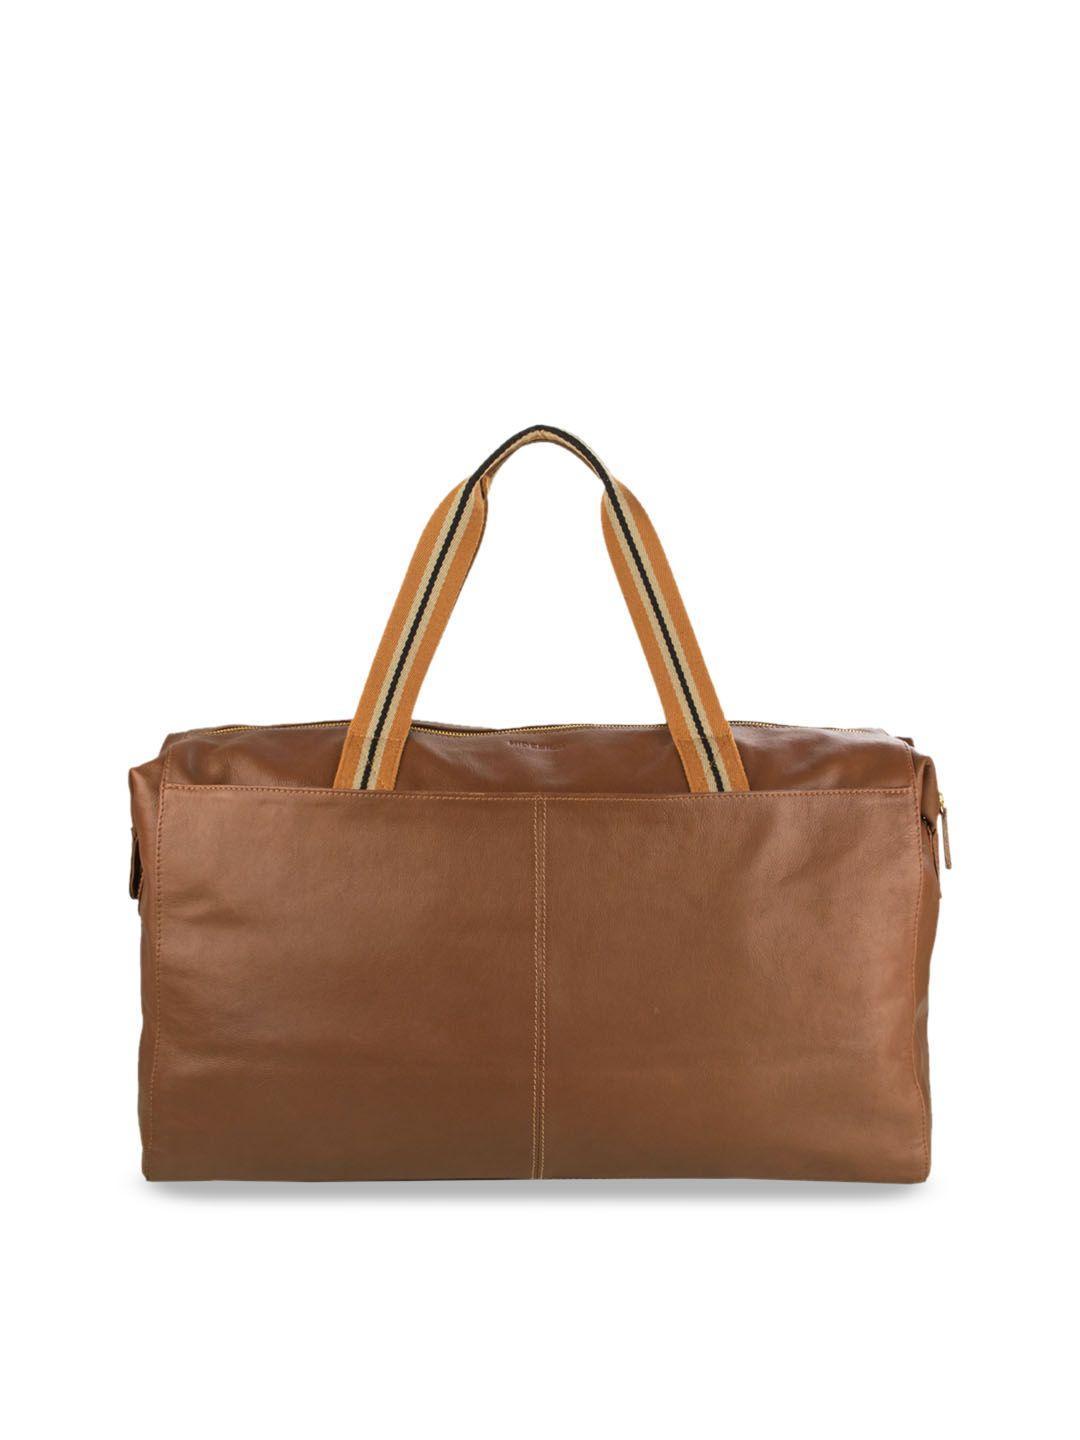 hidesign men tan brown solid leather duffel bag